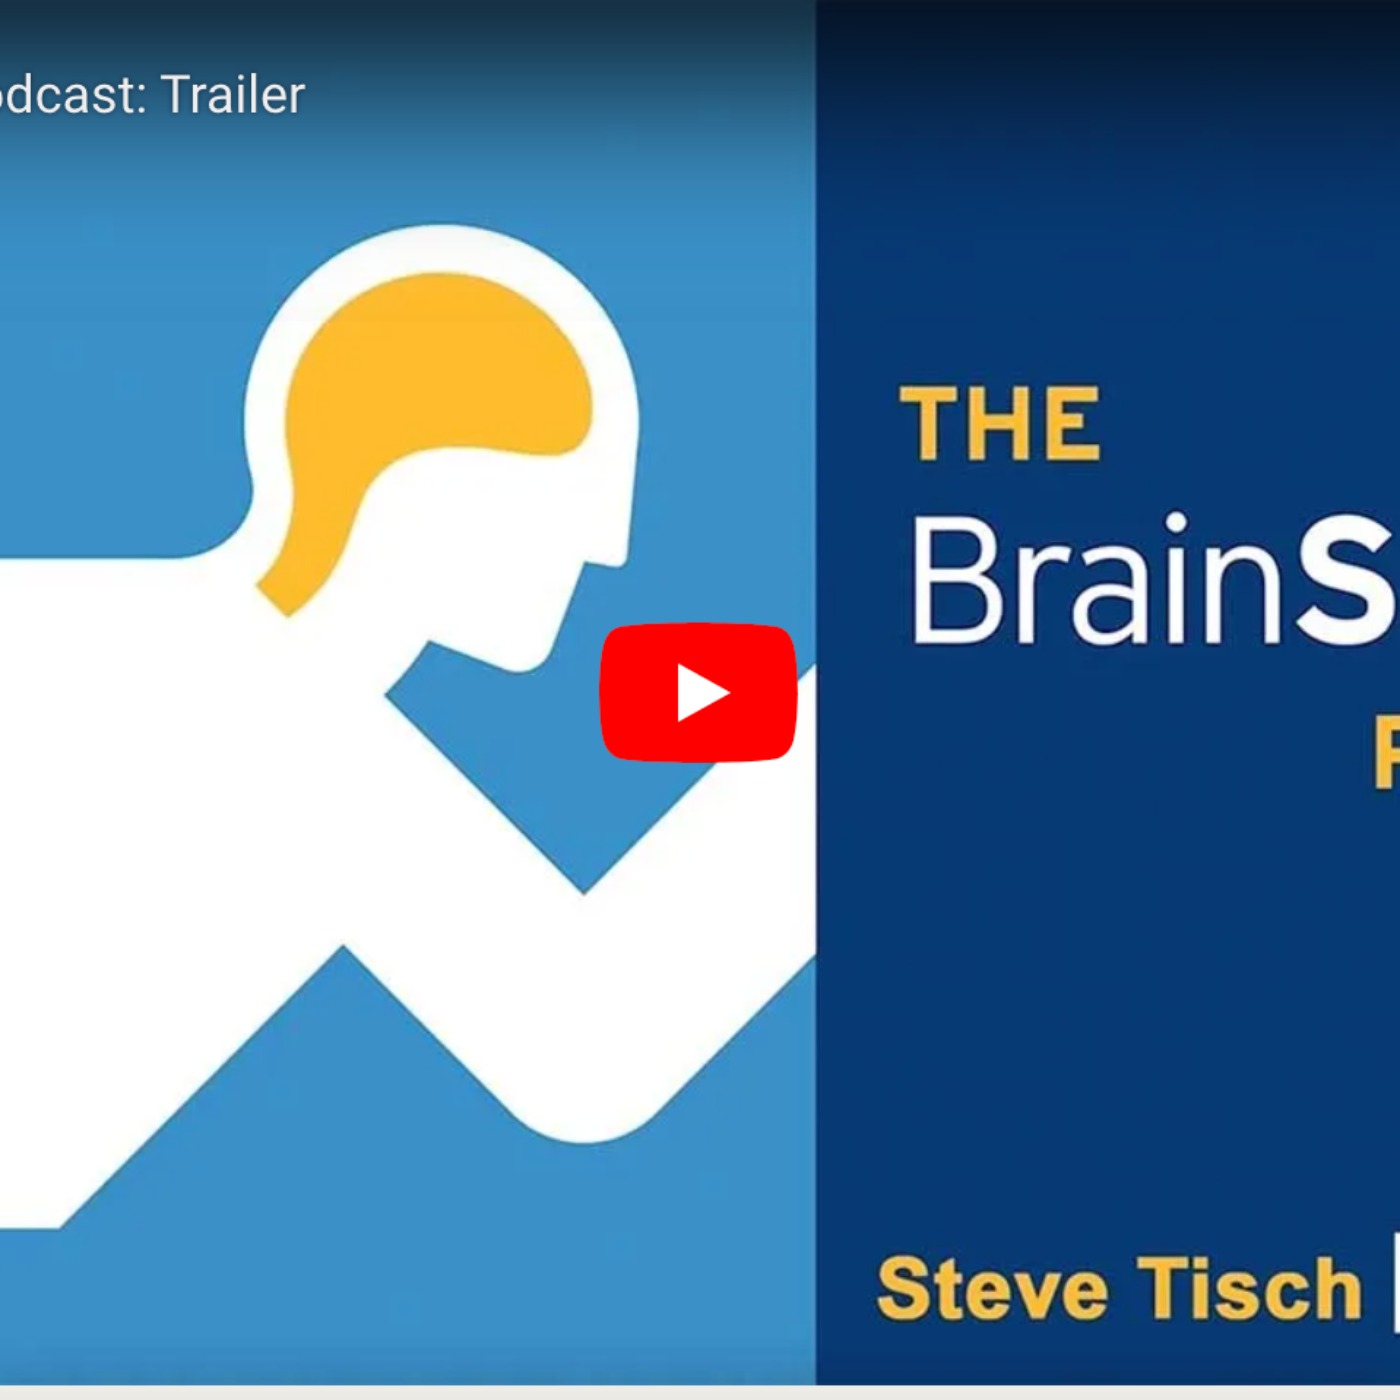 UCLA Steve Tisch BrainSPORT Program & Podcast Image